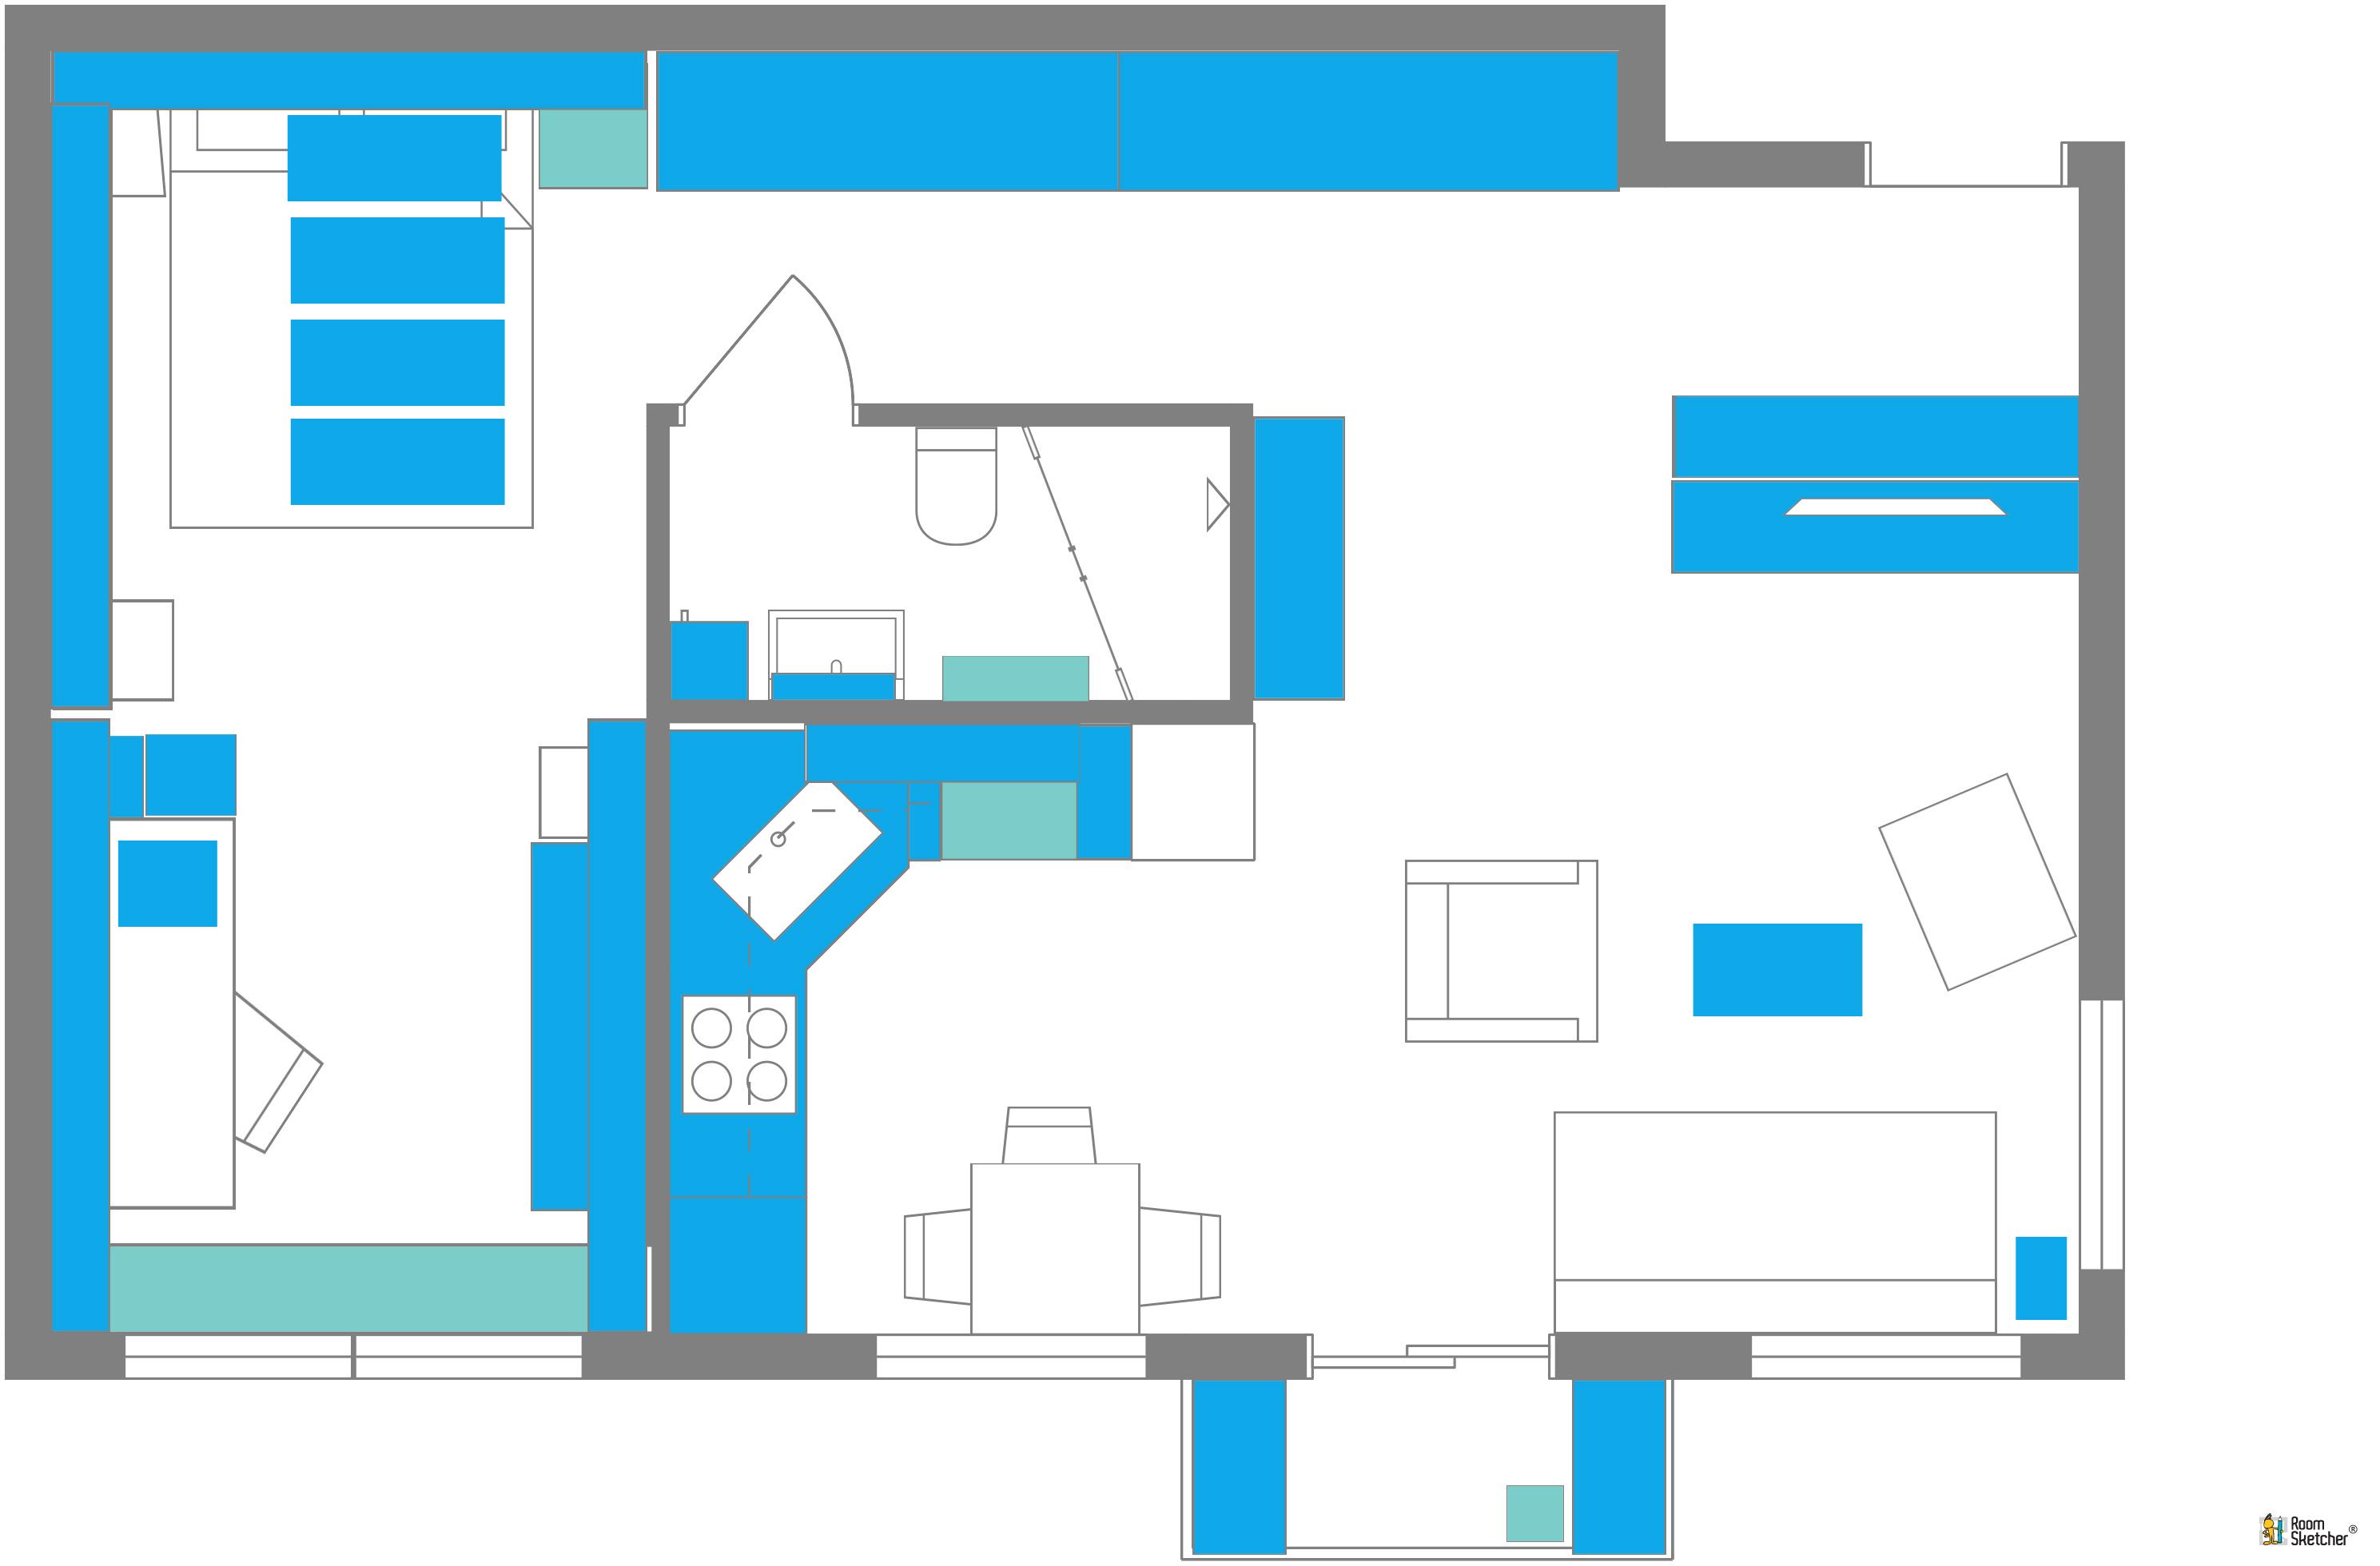 RoomSketcher Wohnidee: Kleine Wohnung mit Stauraum einrichten: 2D Grundriss mit Erläuterung #stauraum #grundriss #kleinewohnungeinrichten ©RoomSketcher